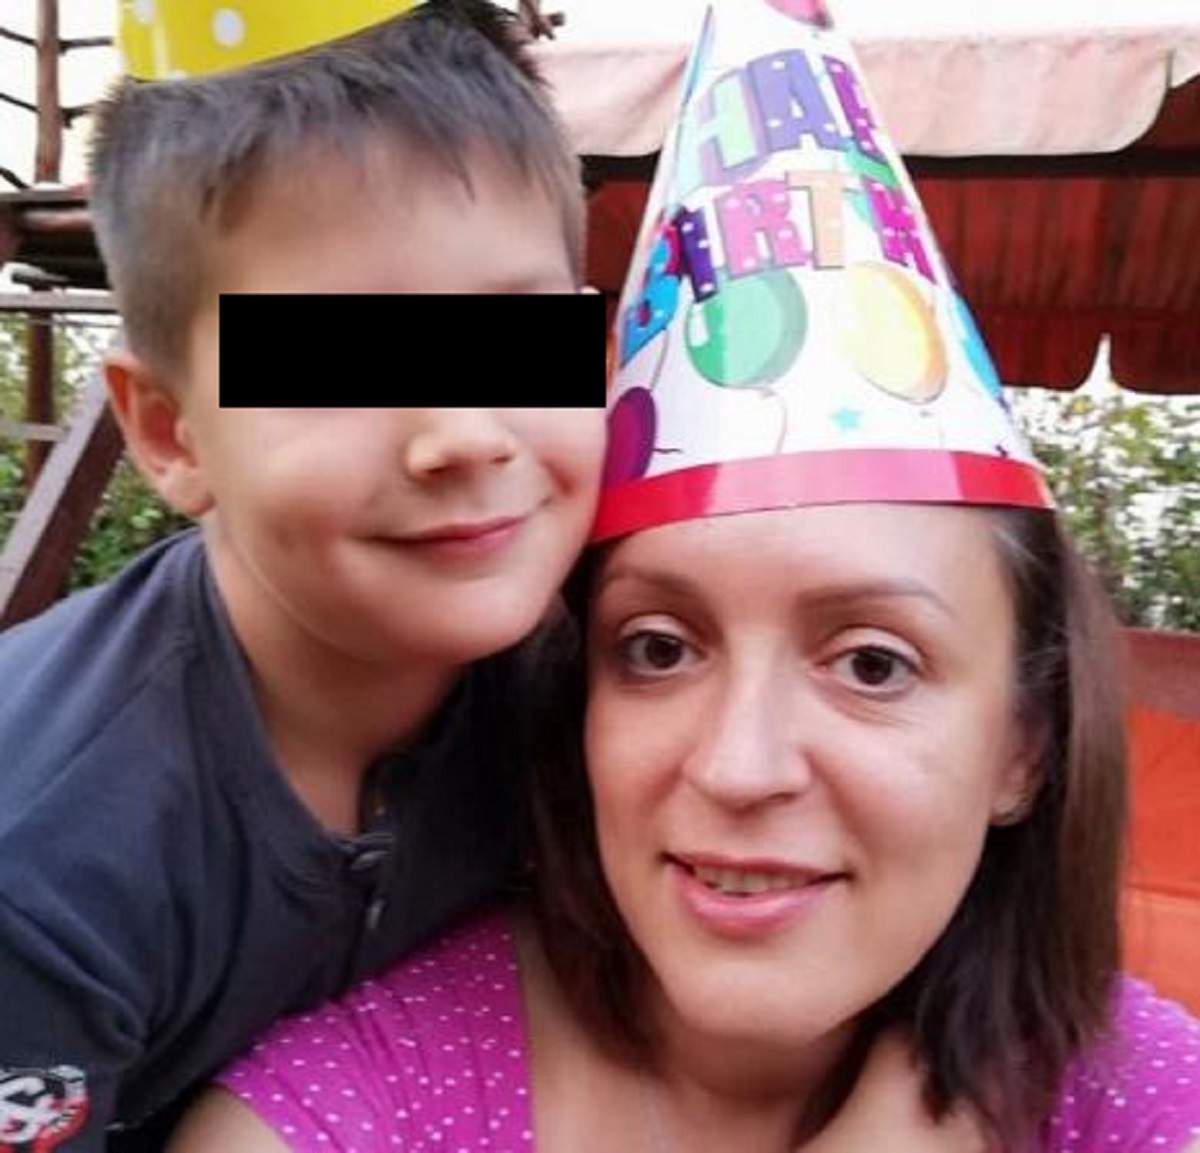 Băiețelul de 8 ani, din Cluj, ucis de propriul tată, a fost înmormântat astăzi! Mesajul sfâșietor al mamei sale: „Cel mai dureros moment din viață” / FOTO